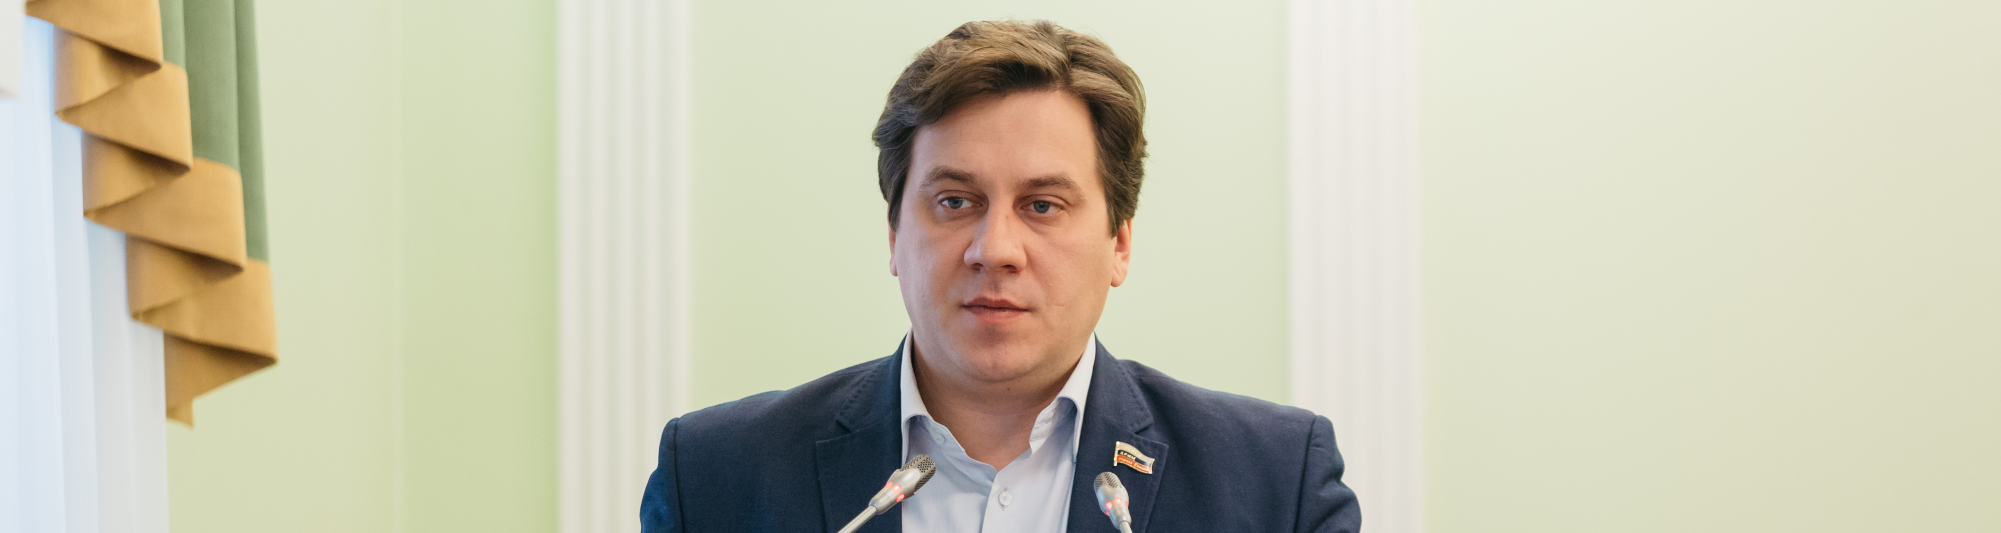 Председателем комиссии Думы по регламенту и правовым вопросам избран Илья Леонтьев